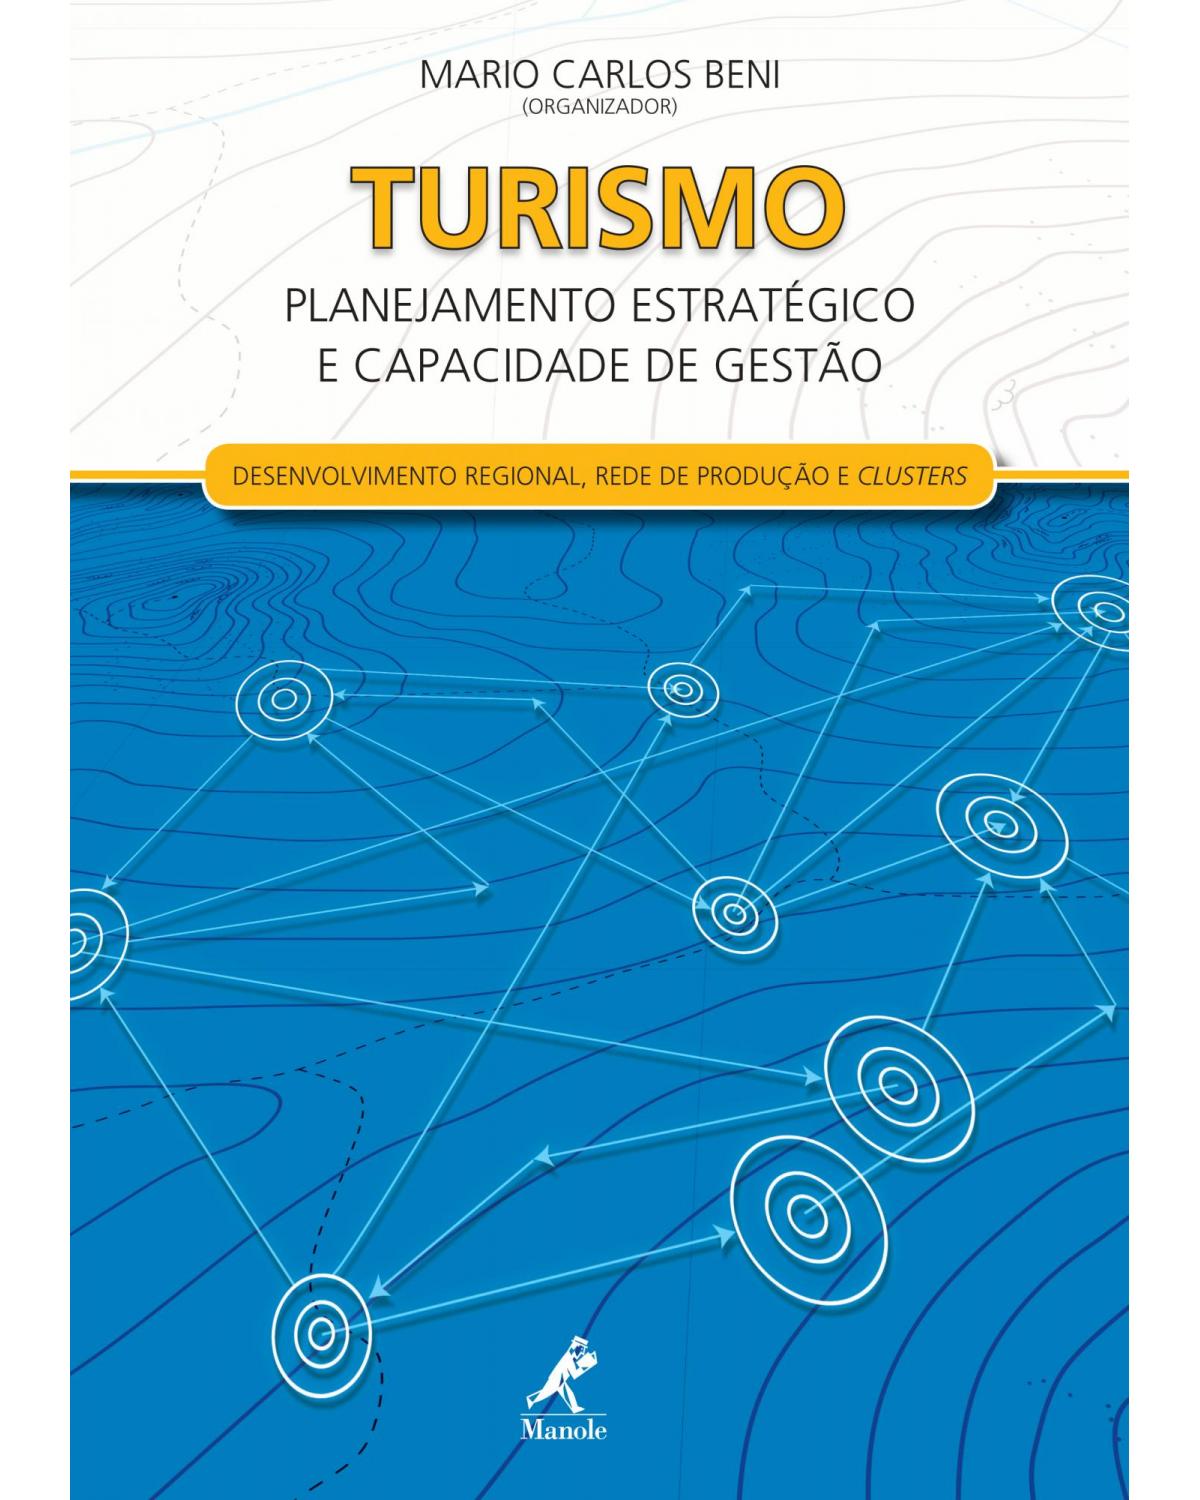 Turismo - planejamento estratégico e capacidade de gestão - Desenvolvimento regional, rede de produção e clusters - 1ª Edição | 2012